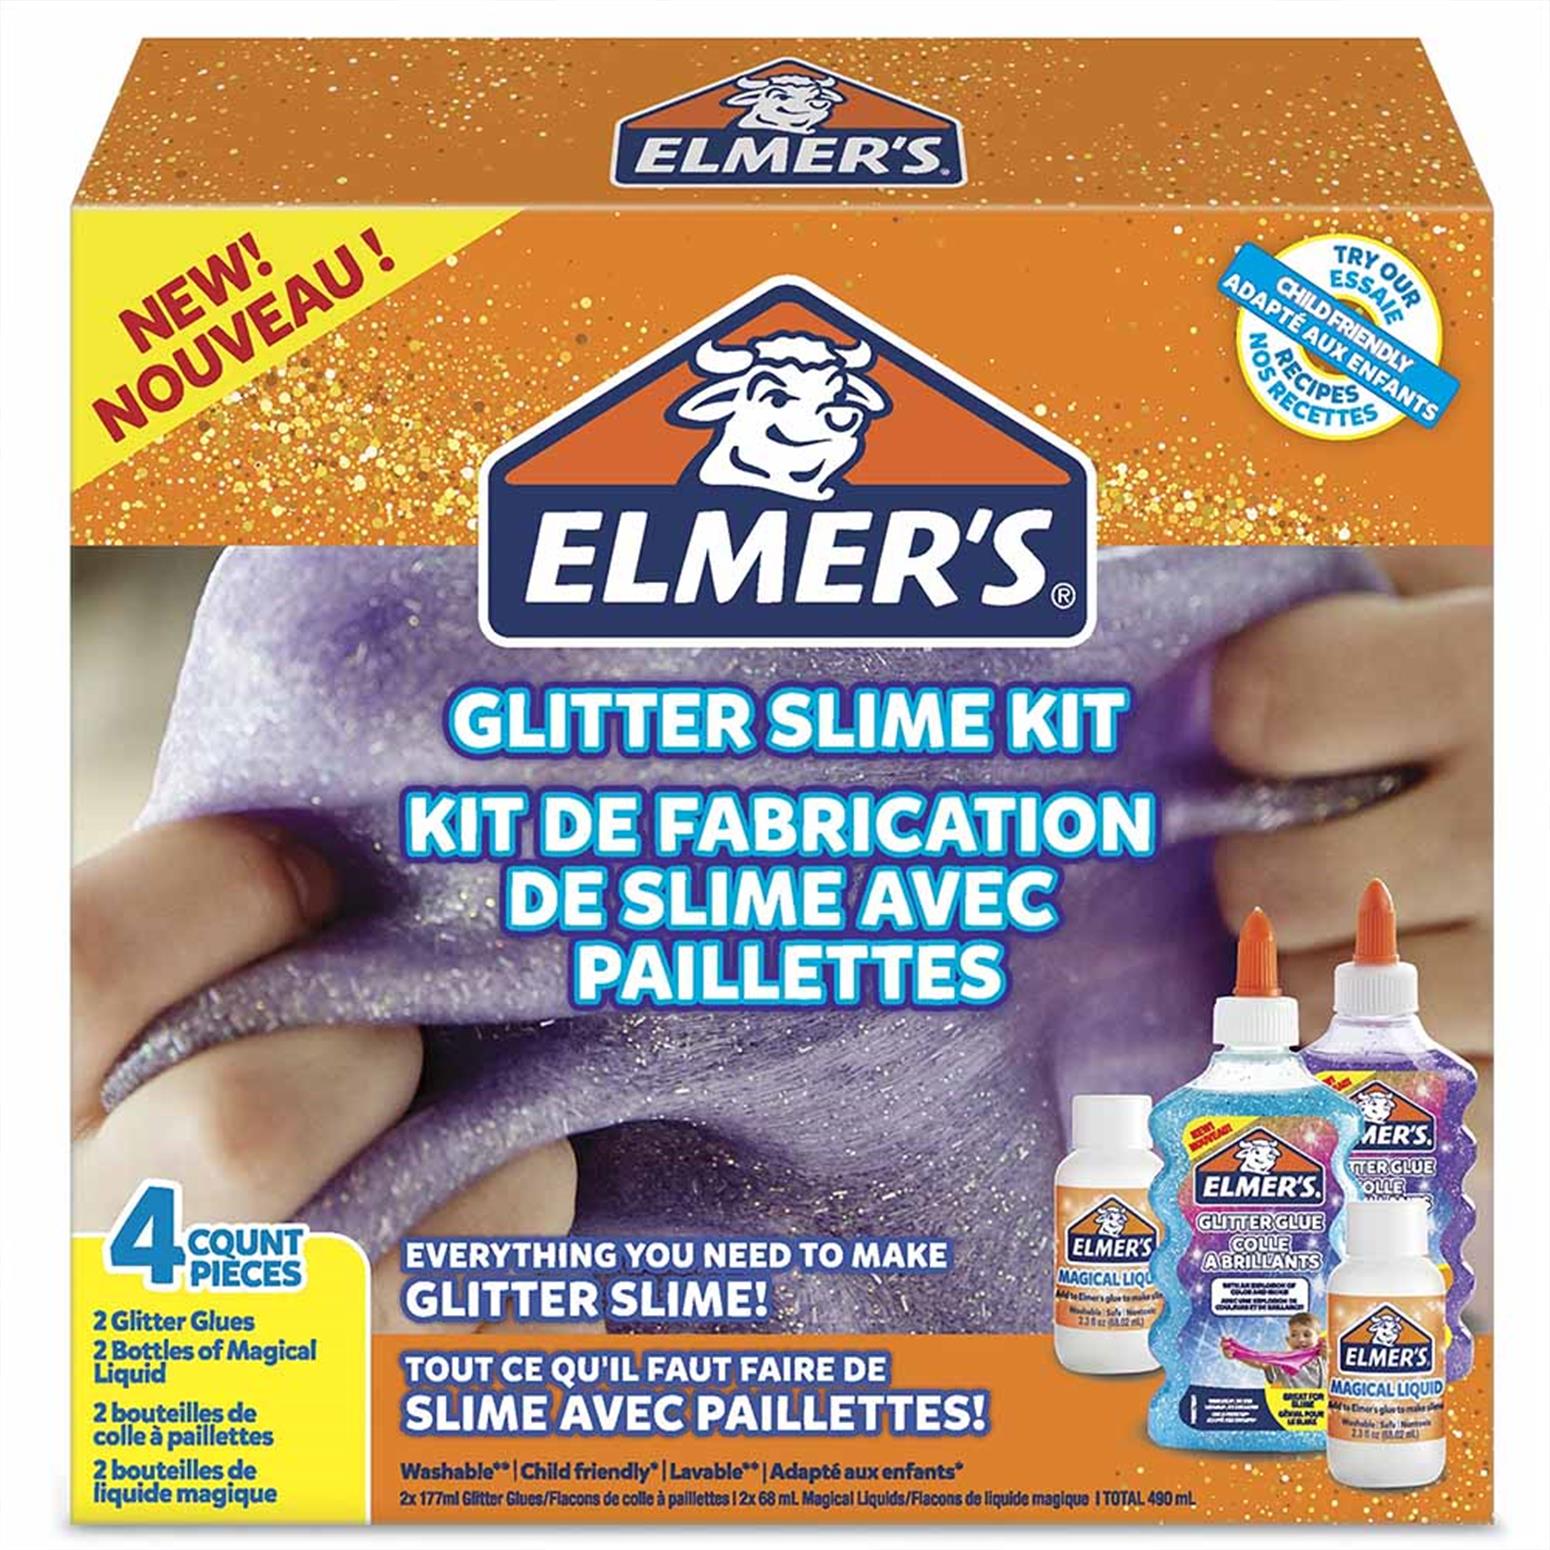 ELMER’S GLITTER SLIME KIT